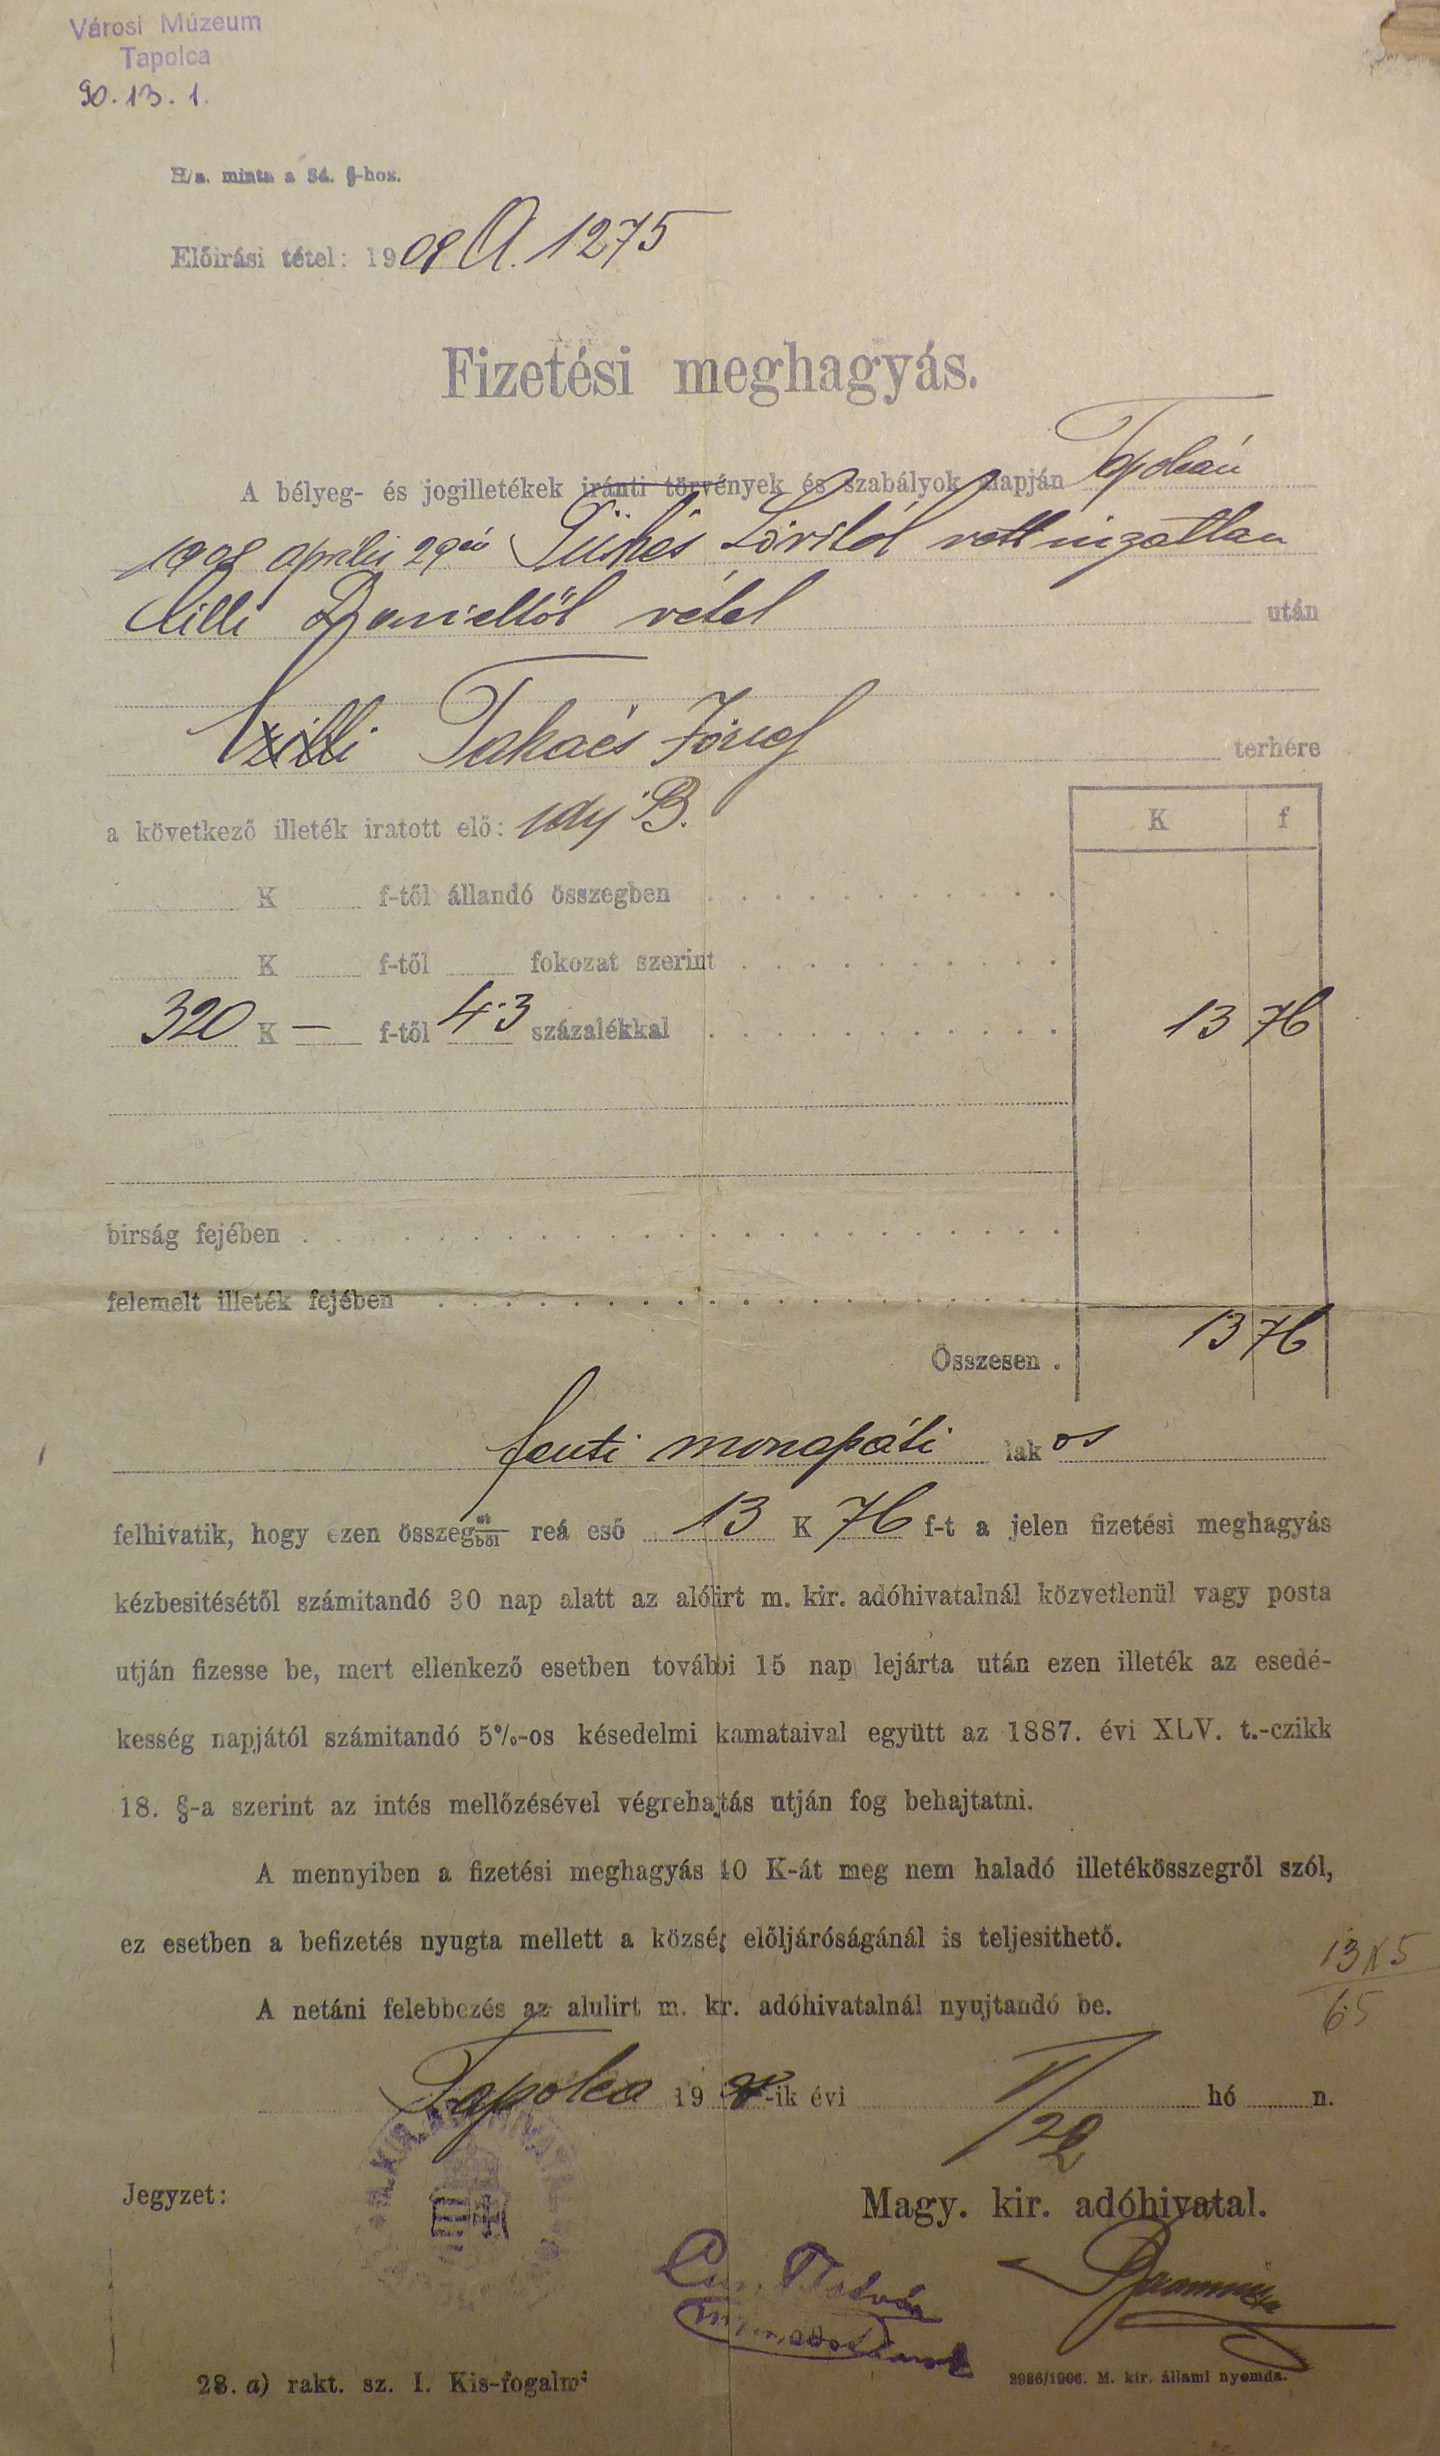 Fizetési meghagyás 1908 (Tapolcai Városi Múzeum CC BY-NC-SA)